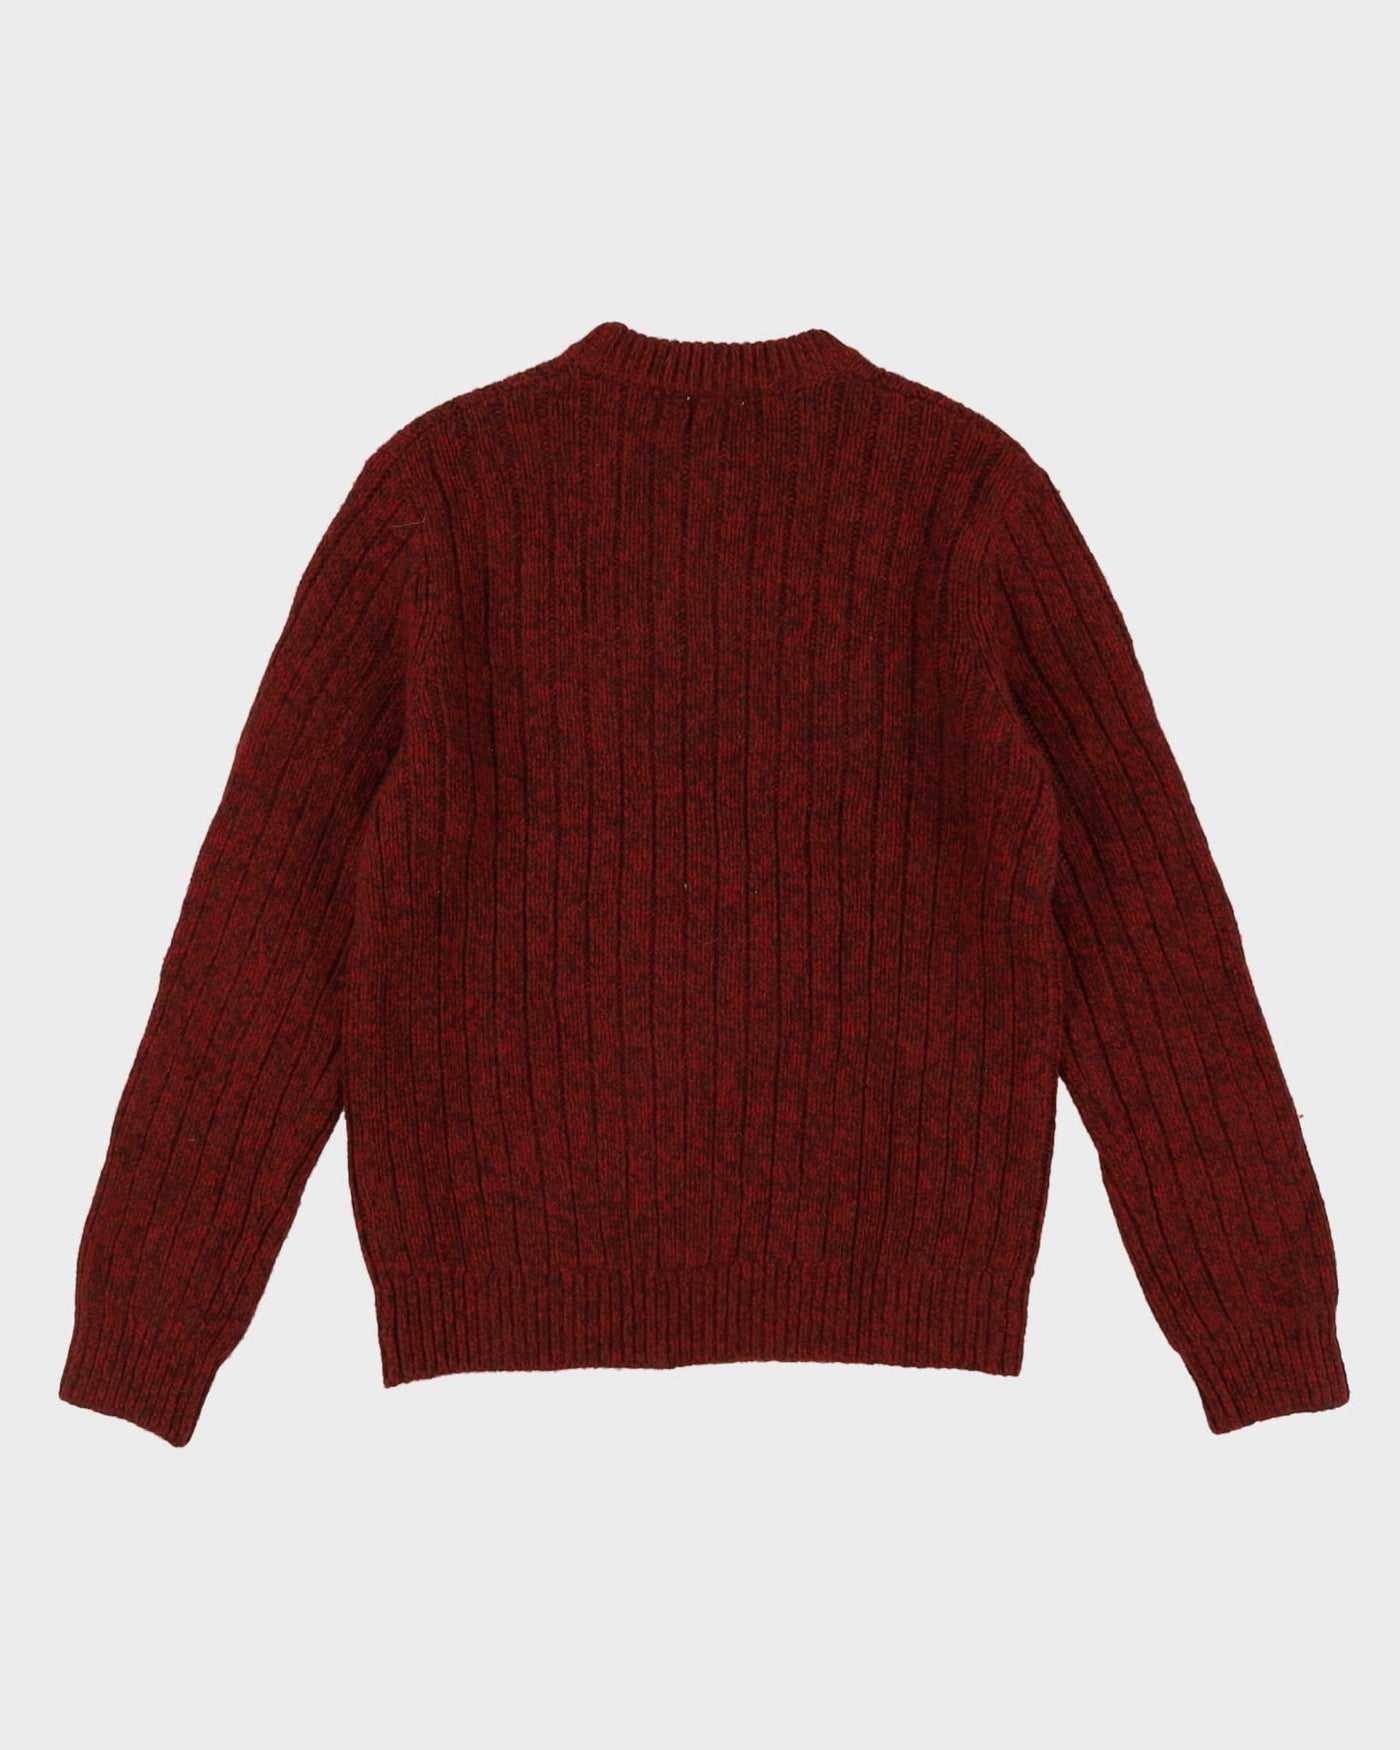 L.L. Bean Red Lambs Wool Knit - M